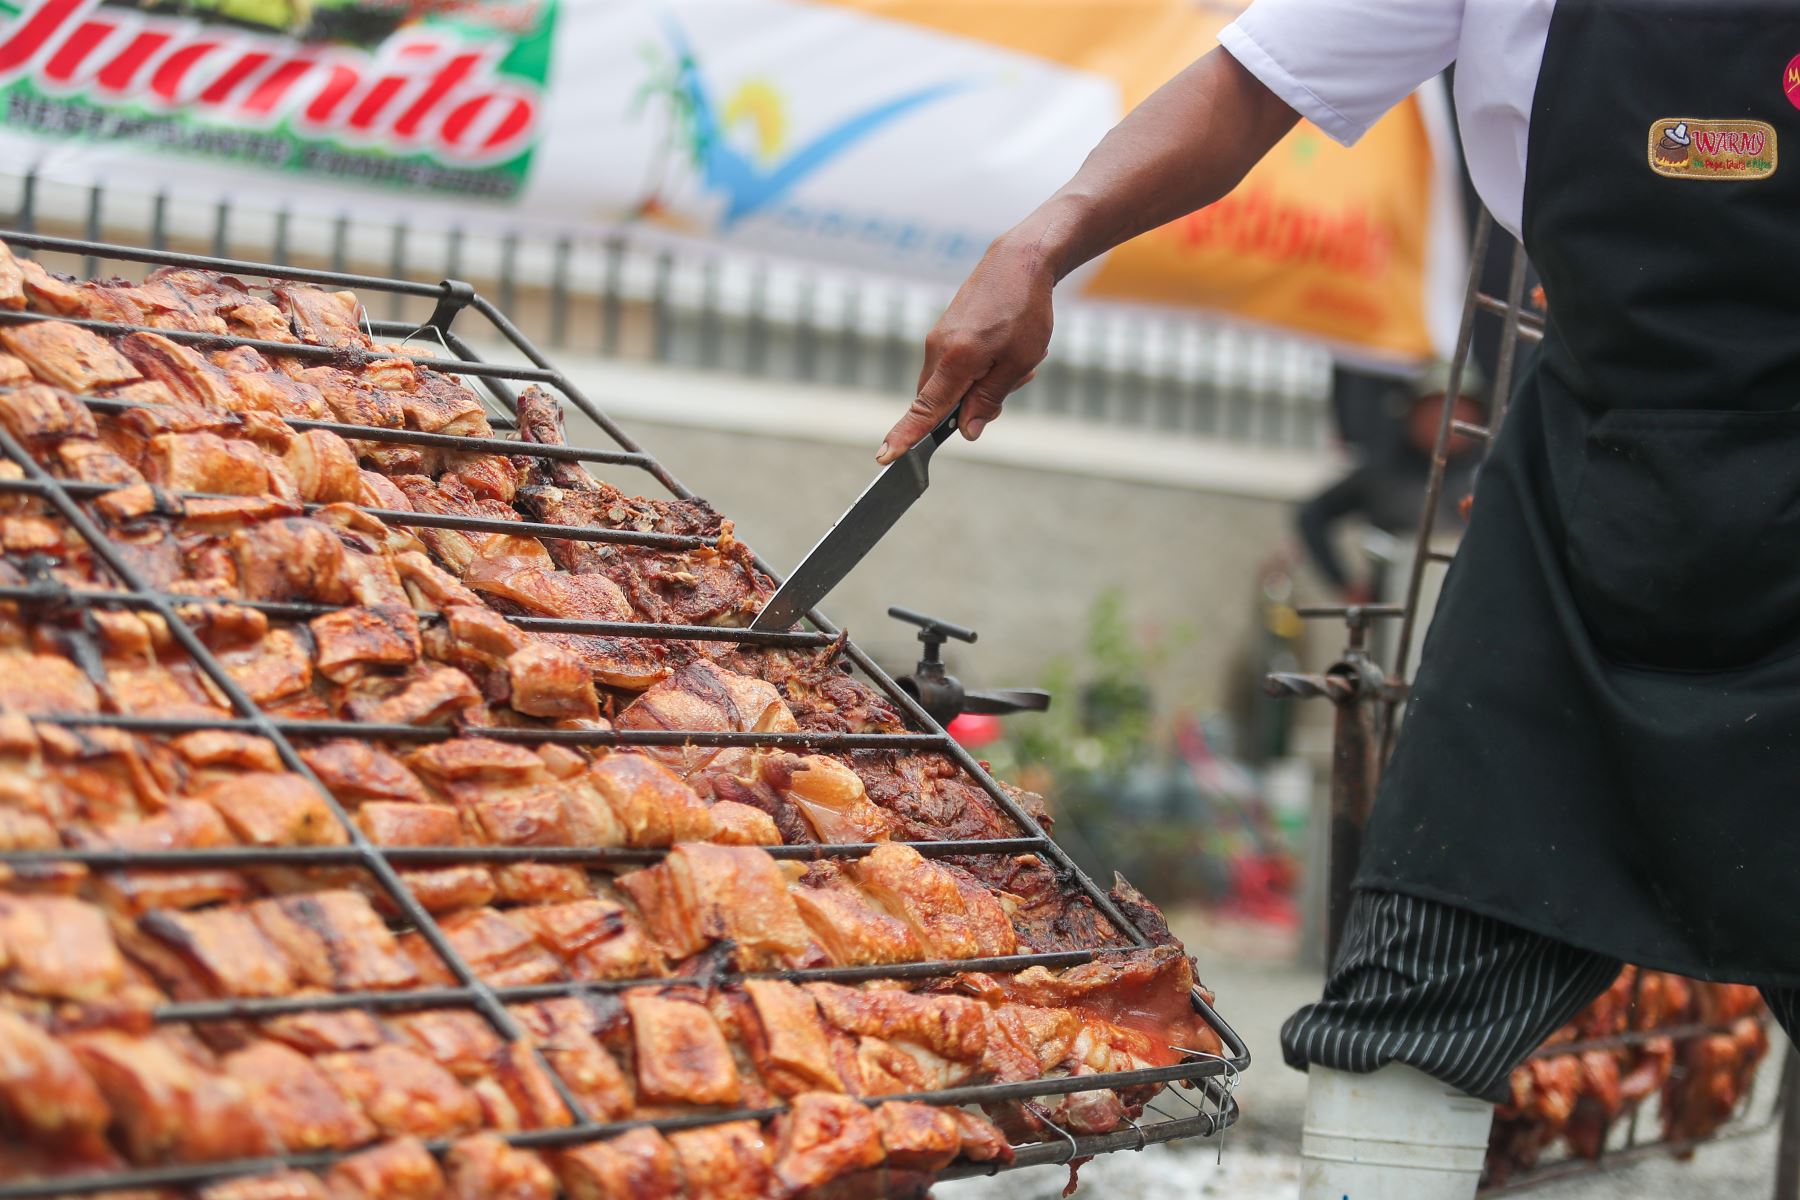 El chancho al palo, uno de los platos bandera de Huaral, es uno de los más demandados por los turistas que visitan el norte de Lima. ANDINA/Ricardo Cuba